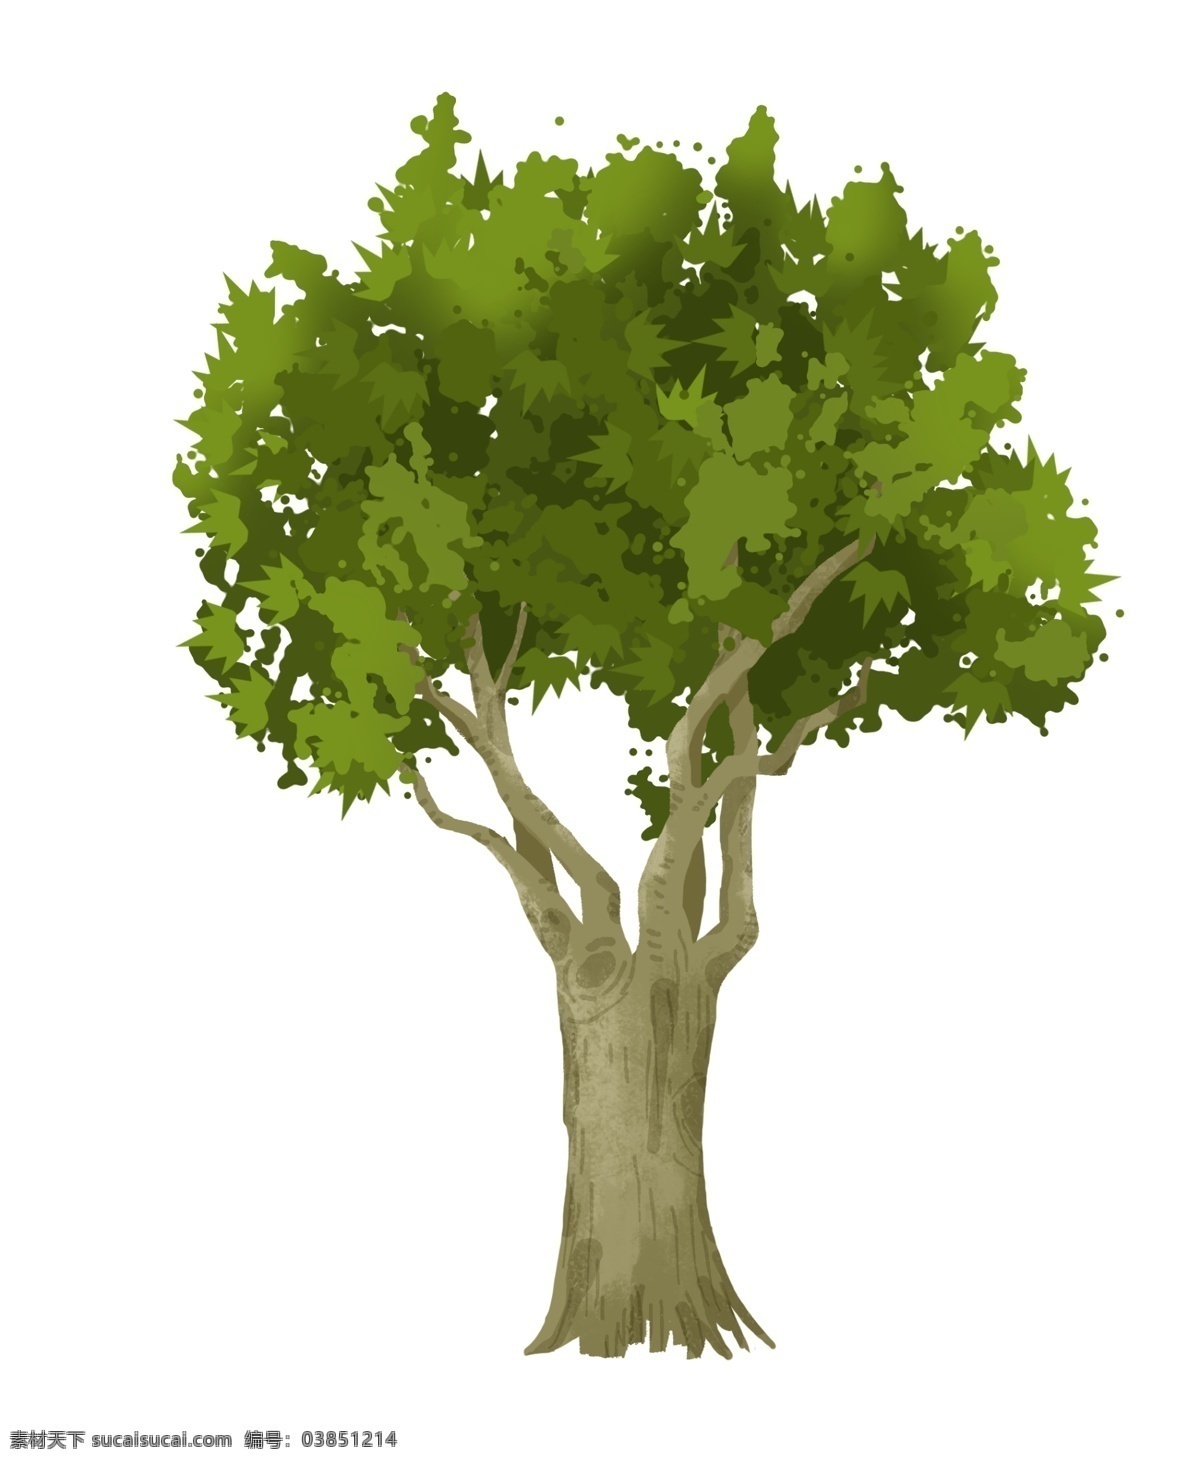 植物 大树 树叶 插画 茂密 树木 植物大树 绿色大树 绿色树木 树干树叶 浓密的树叶 绿植